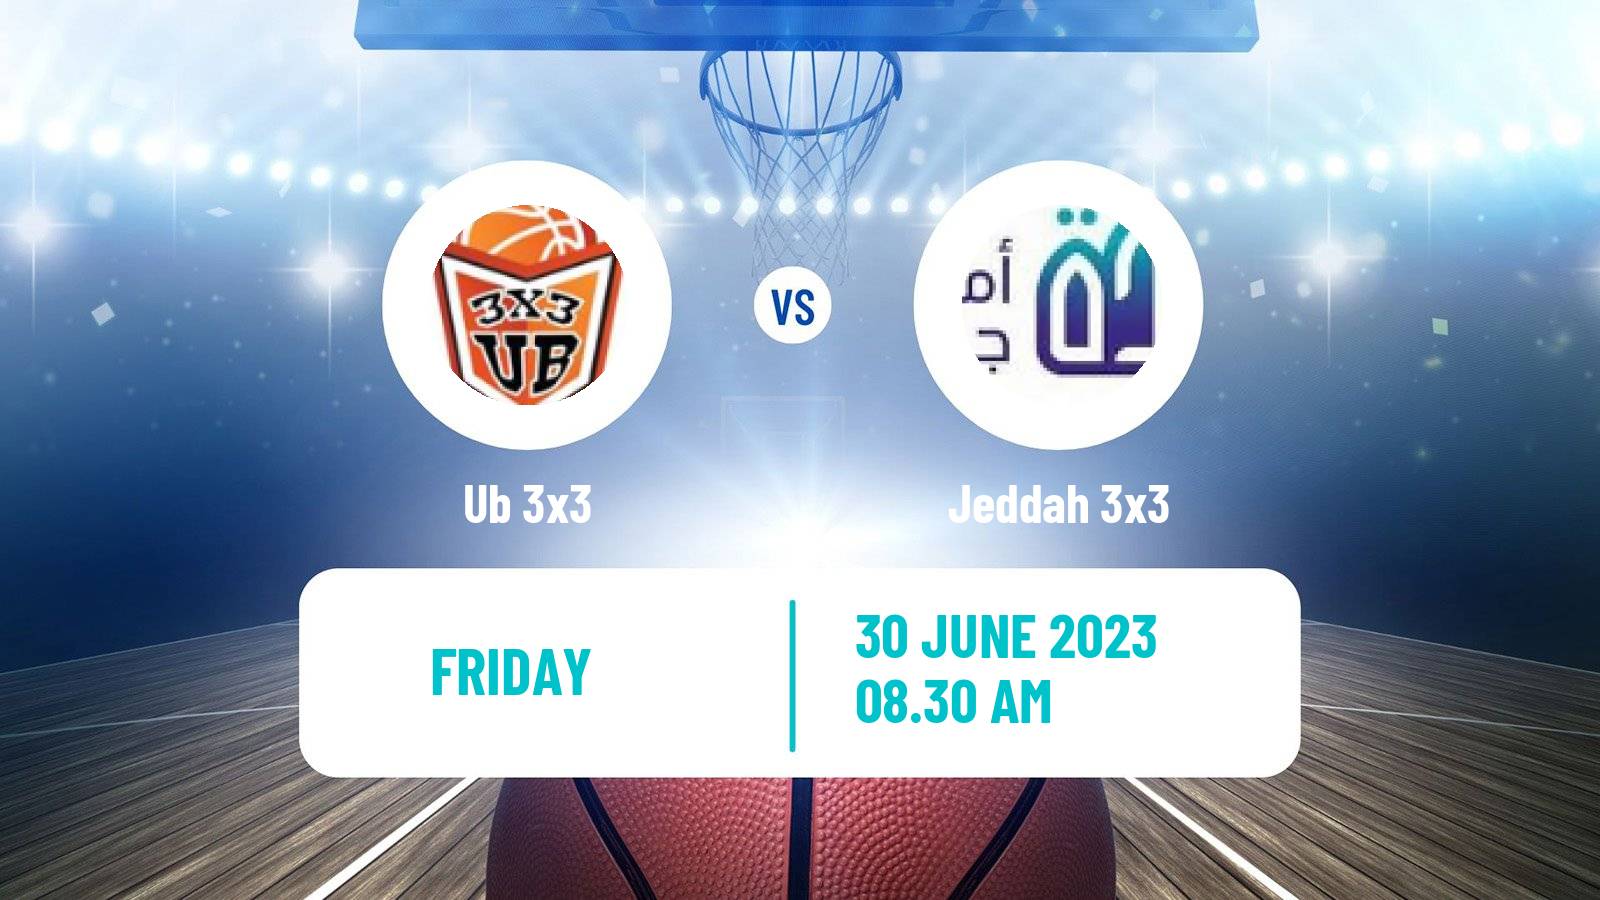 Basketball World Tour Marseille 3x3 Ub 3x3 - Jeddah 3x3